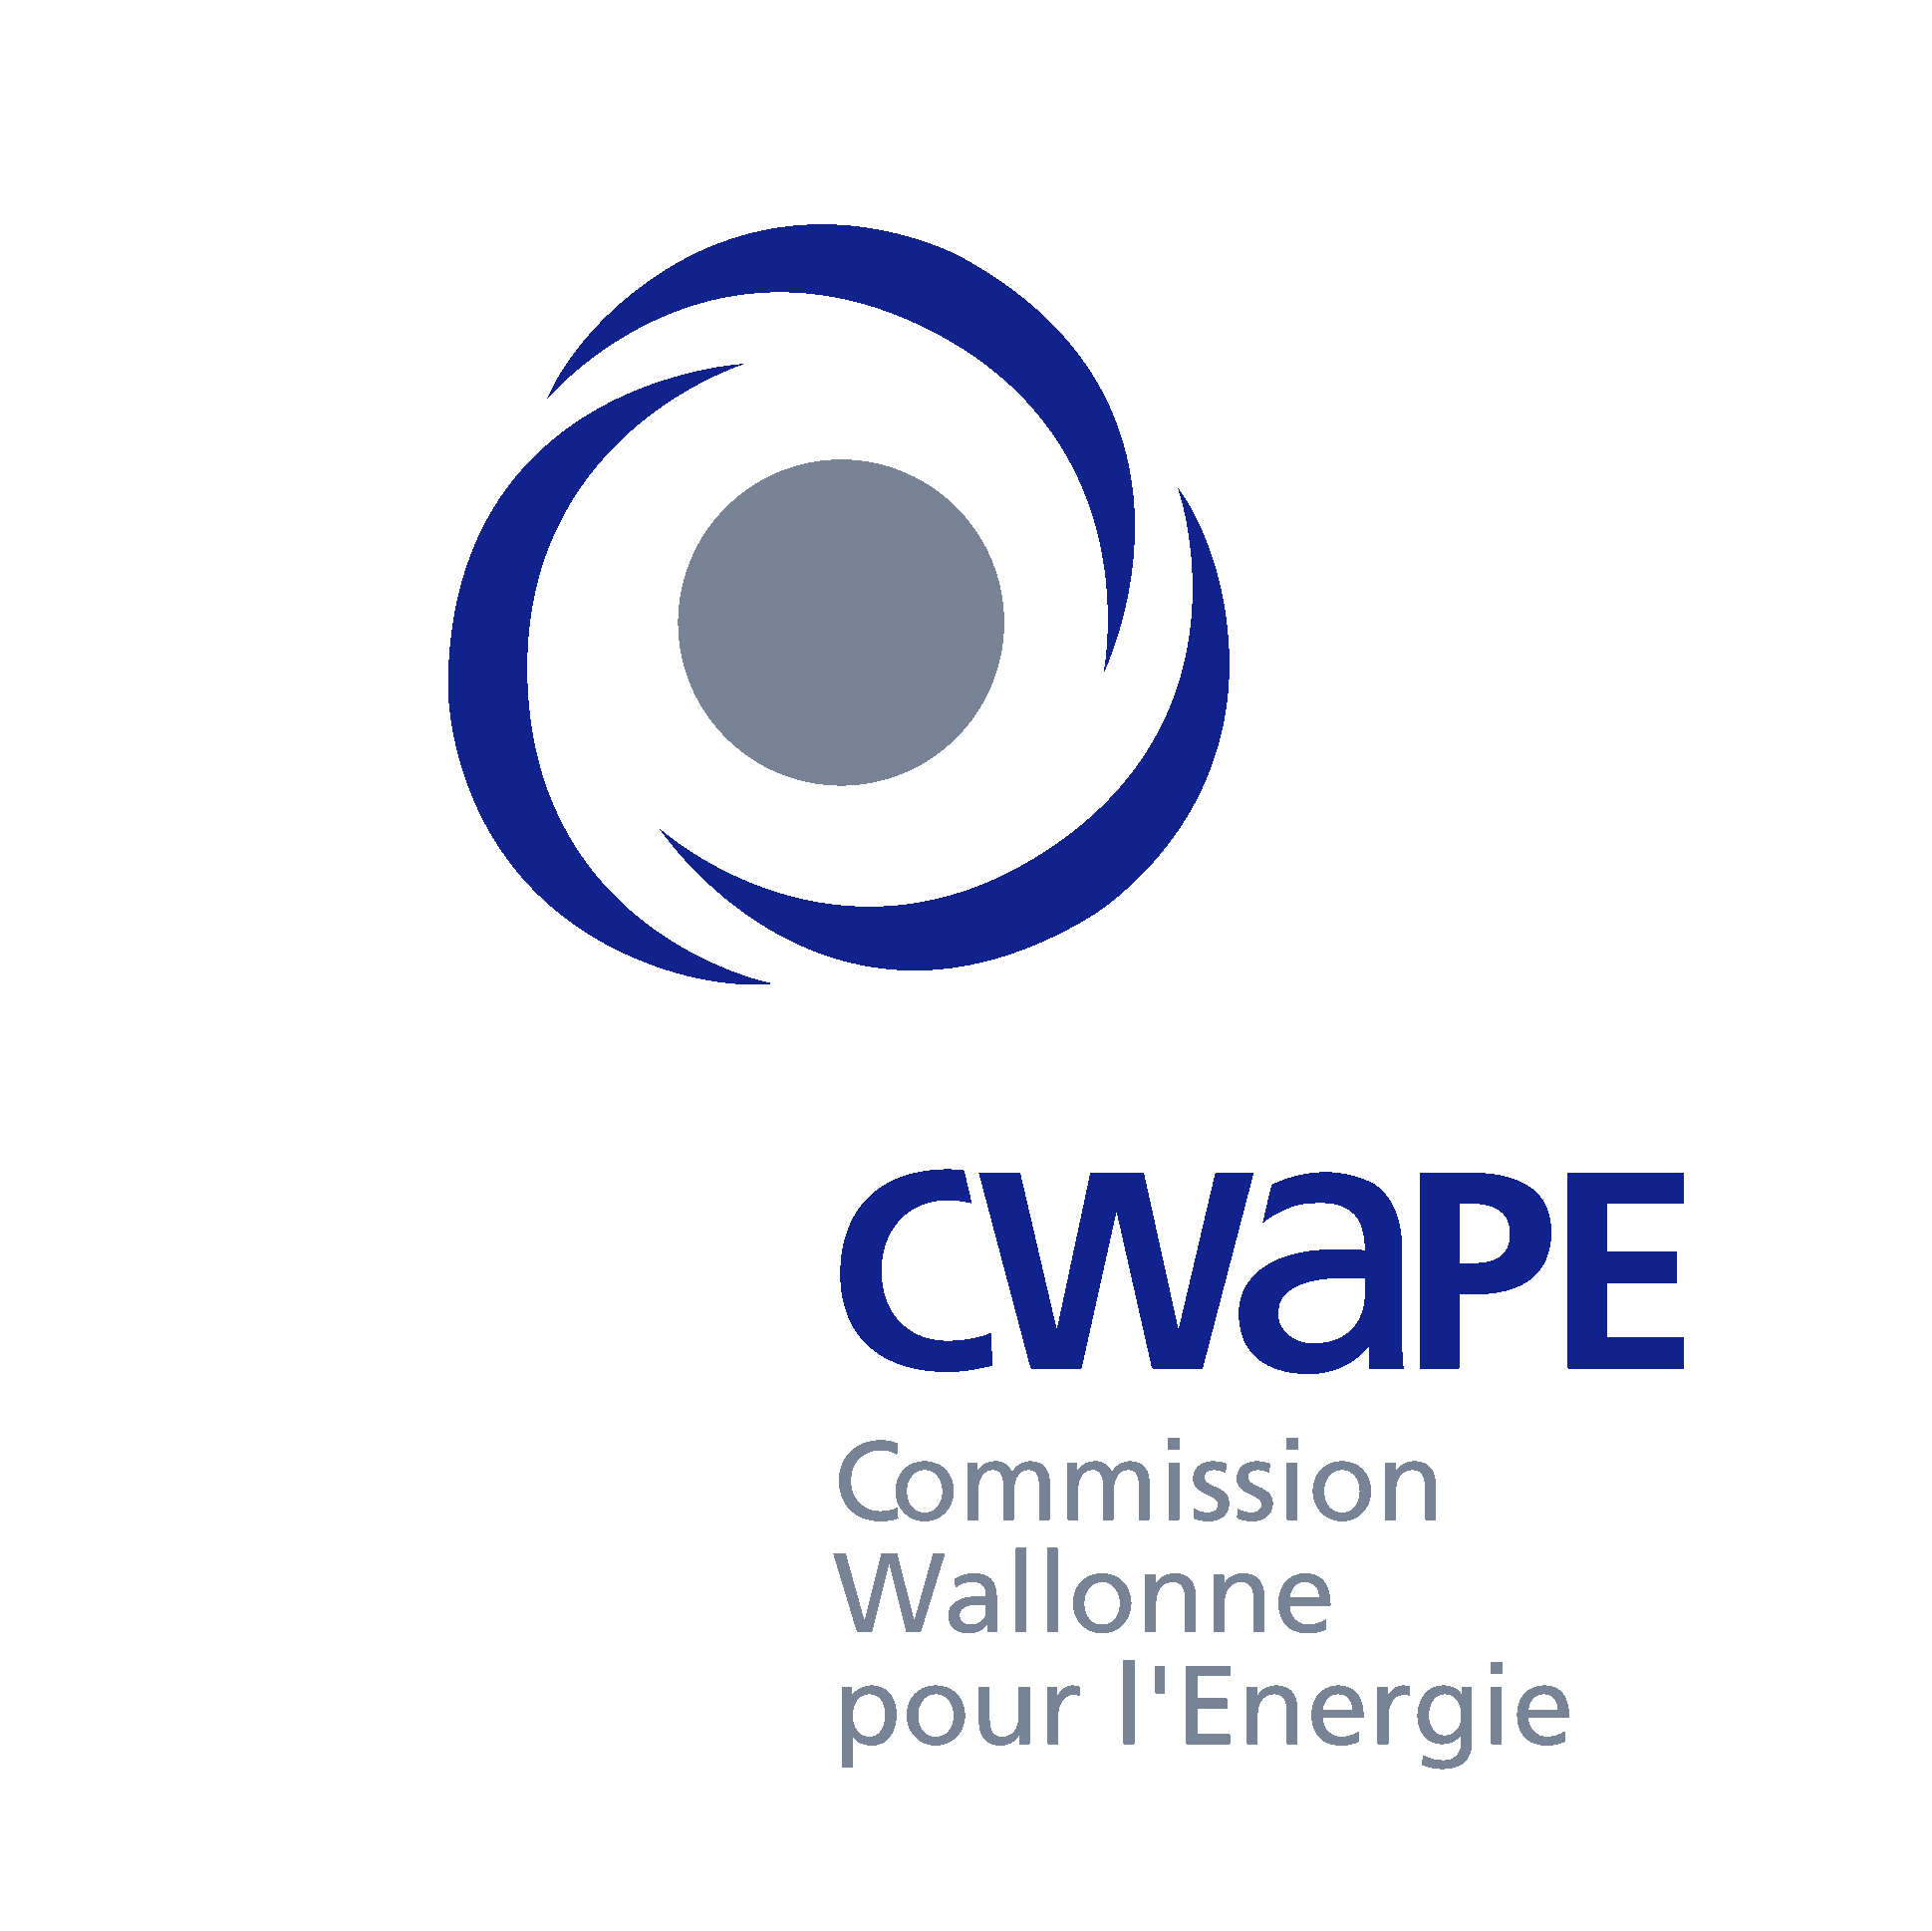 CWaPE (Commission wallonne pour l'Energie)